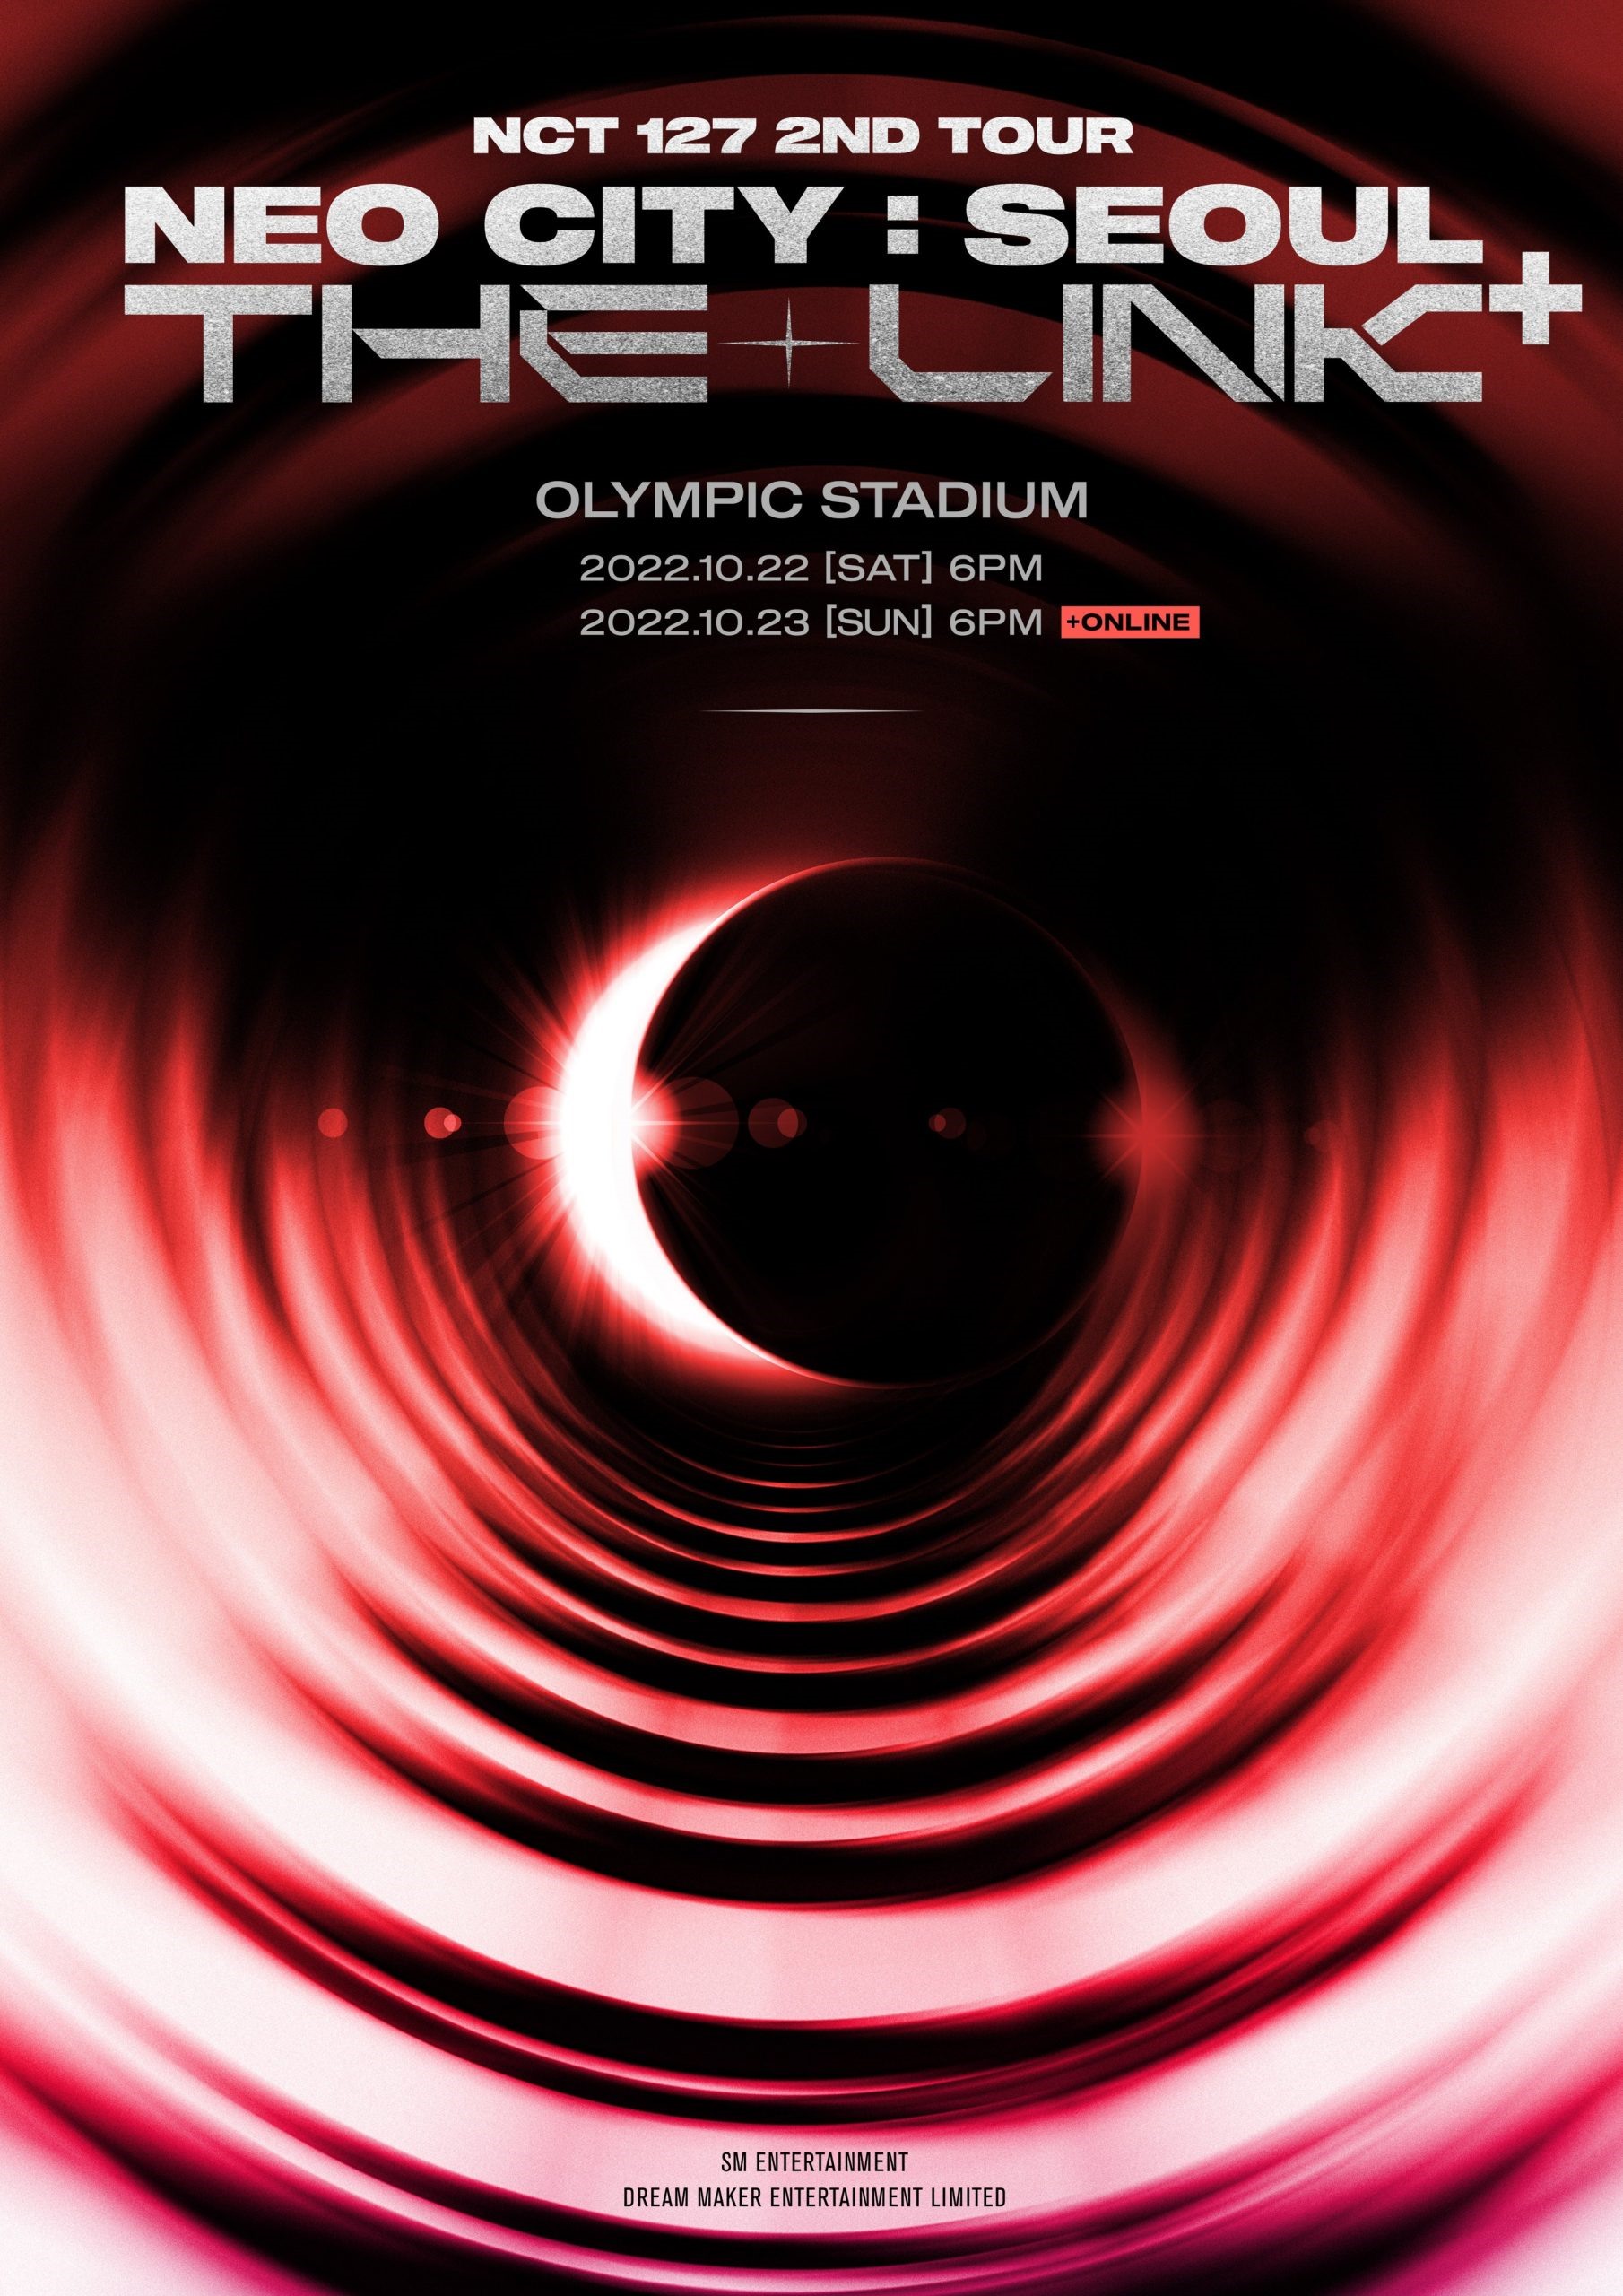 Poster thông báo concert “Neo City: The Link” sẽ được tổ chức tại Seoul. Ảnh: Twitter